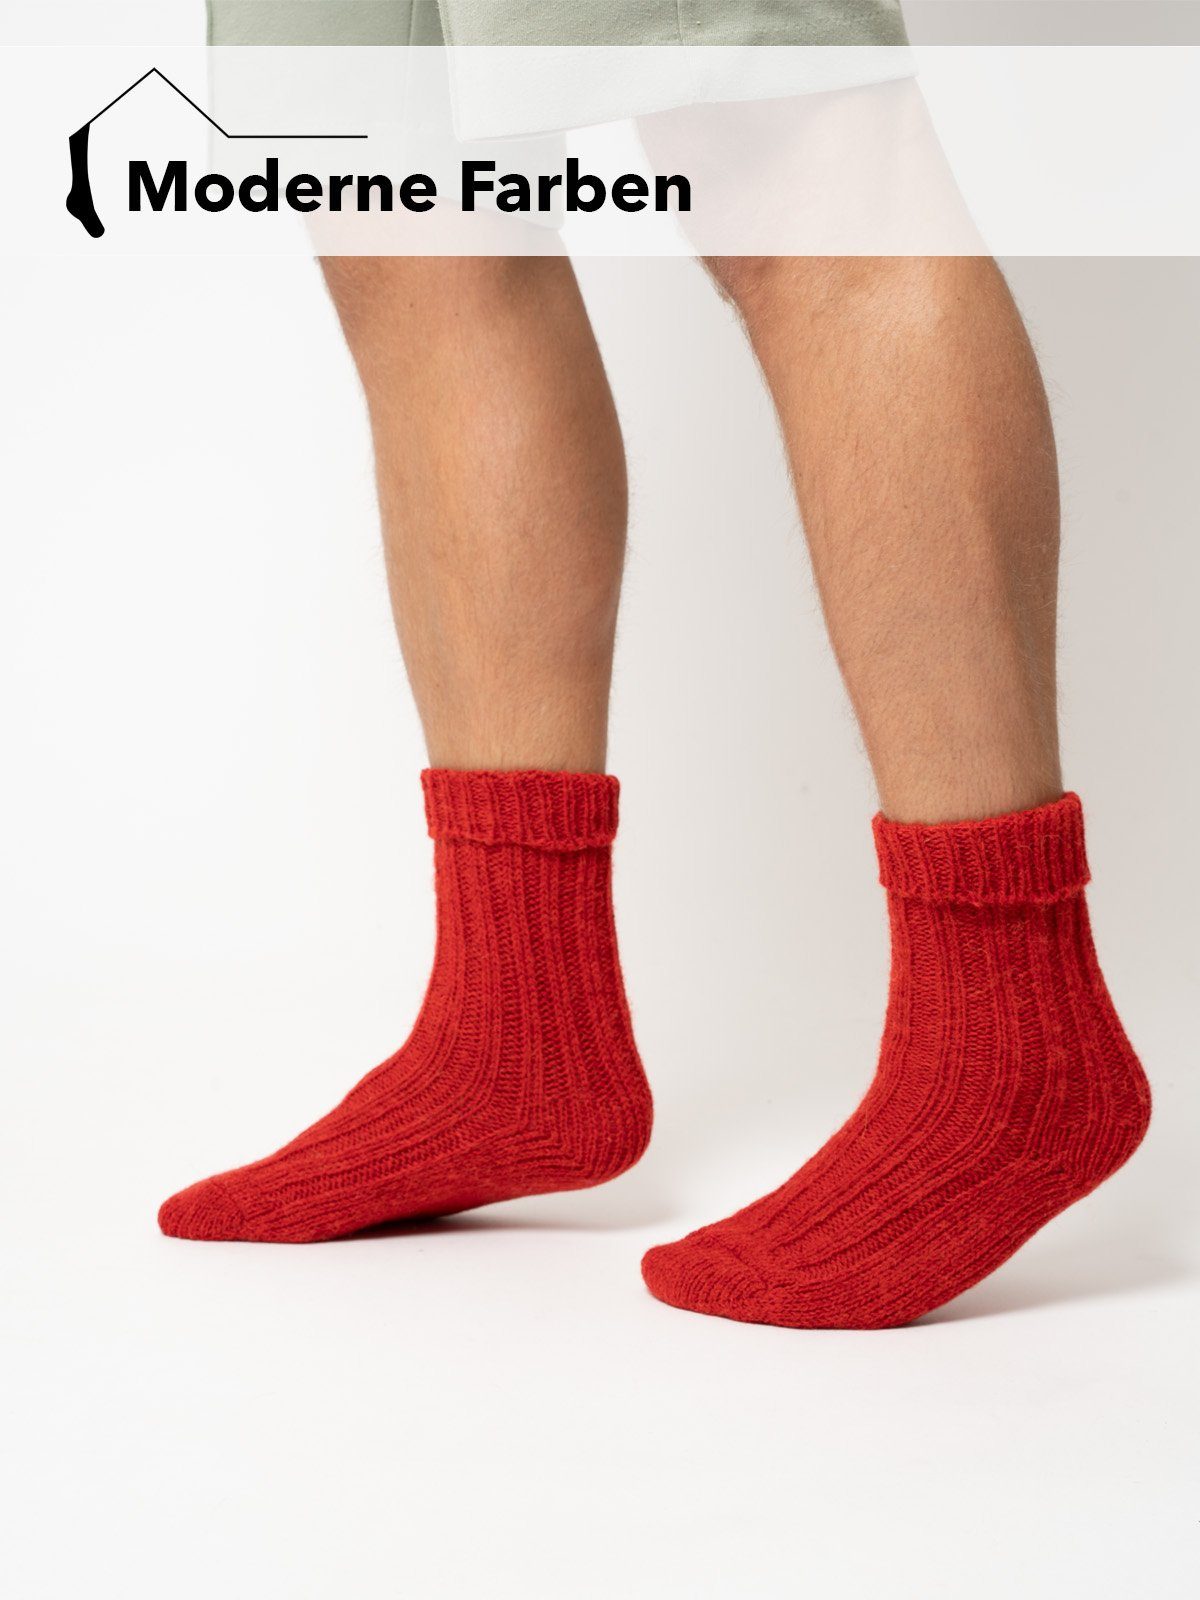 HomeOfSocks Socken Bunte Wollanteil Olive Alpakawolle und und Strapazierfähige 40% warme Wolle mit mit und mit Umschlag Alpakawolle Socken Socken